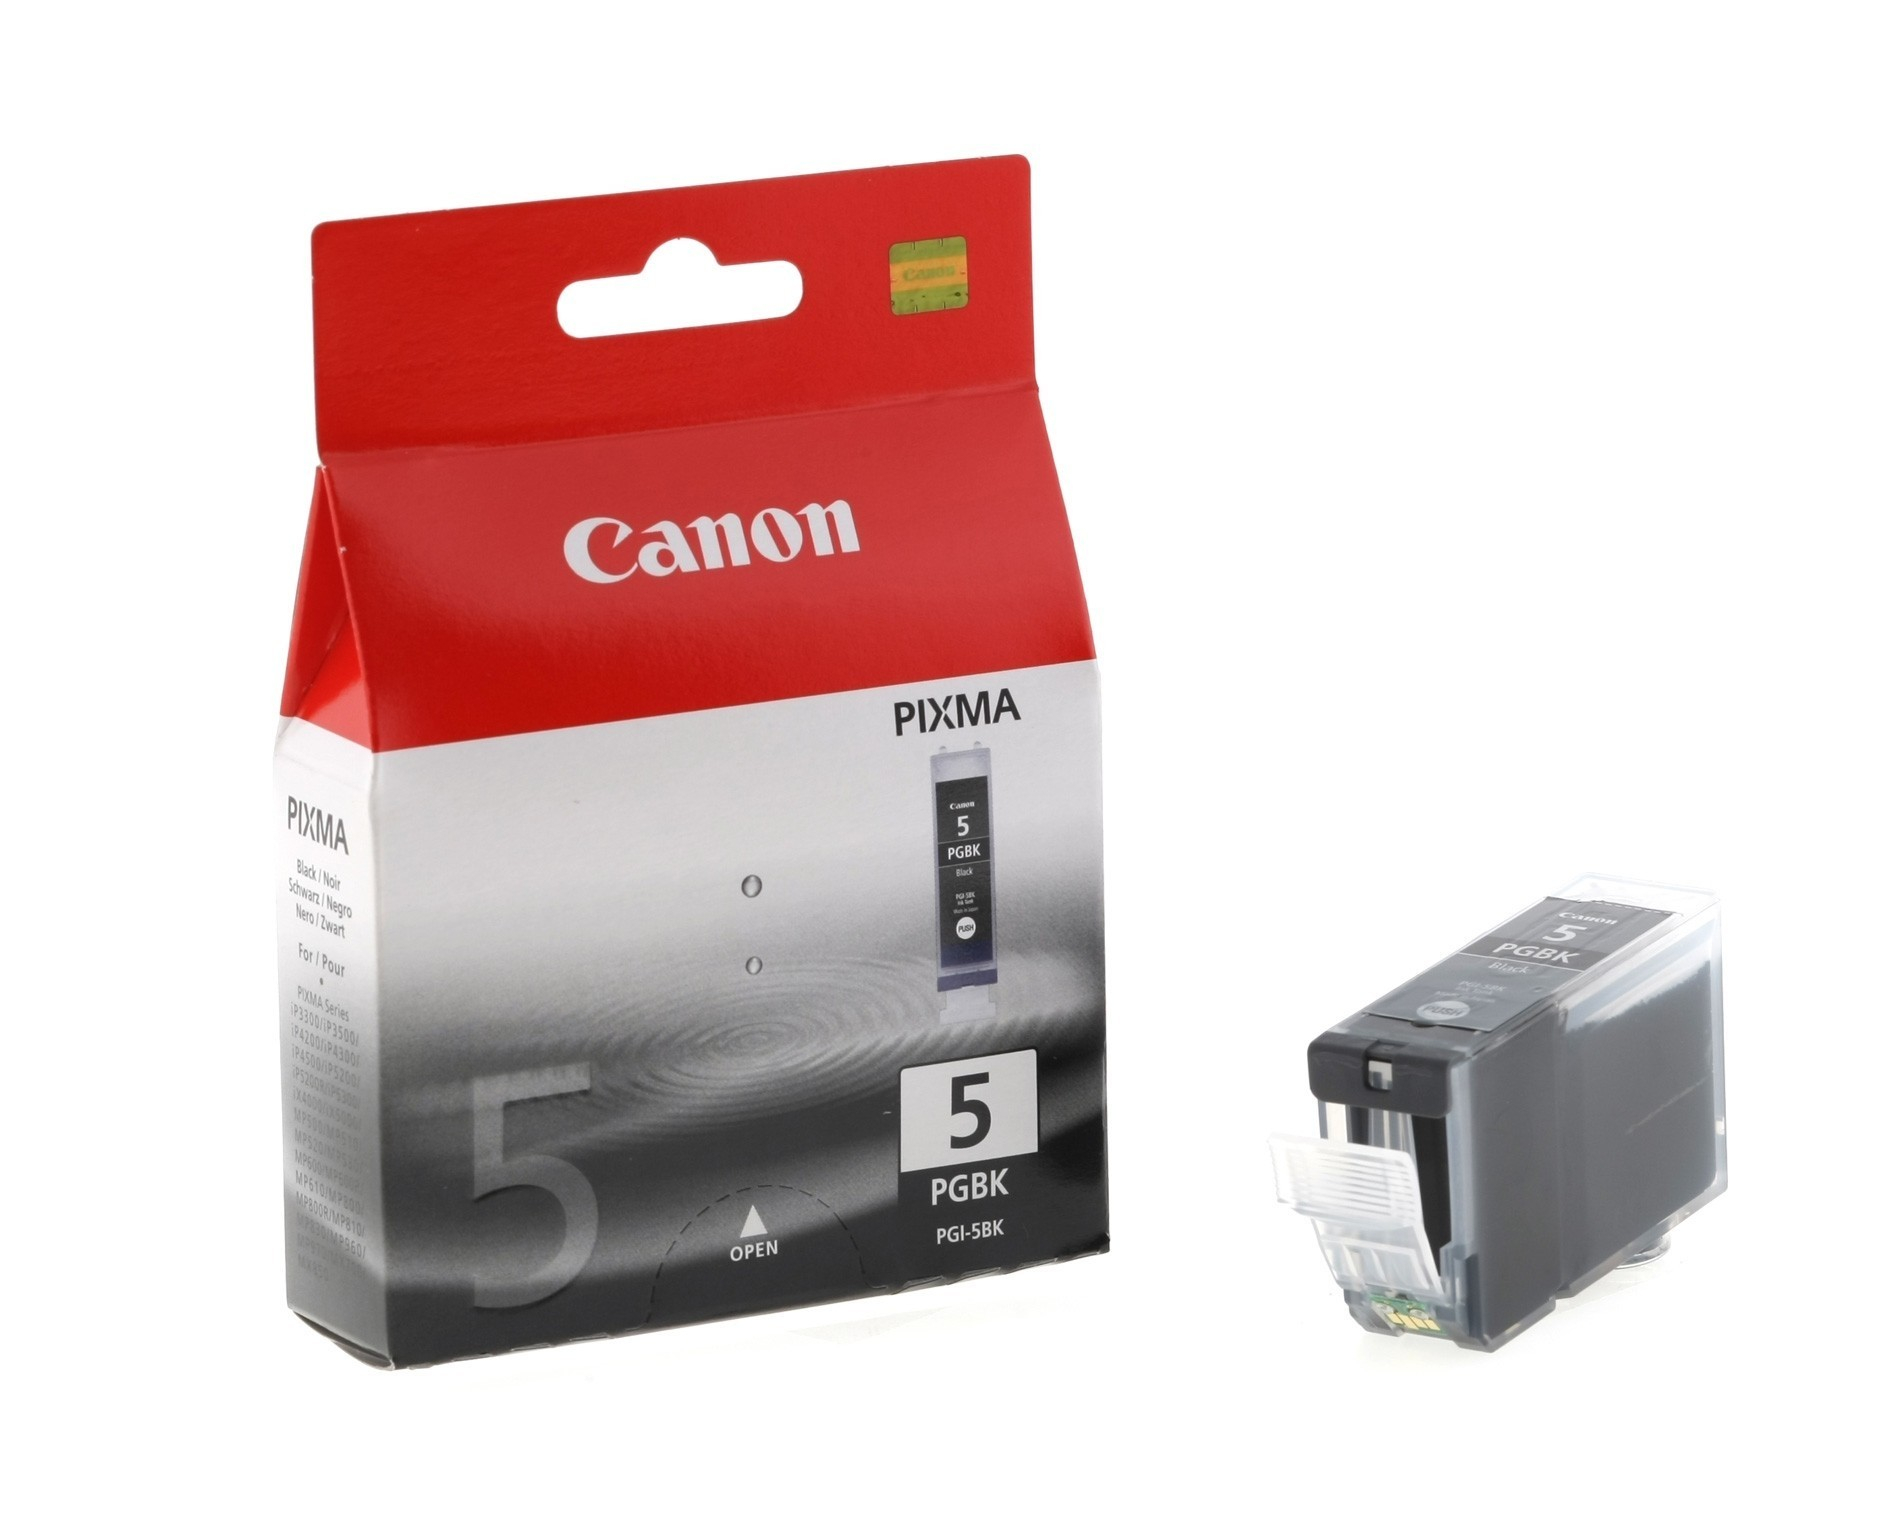 Original Druckerpatrone Canon Pixma IP 5200 Series (0628B001 / PGI-5BK) Schwarz